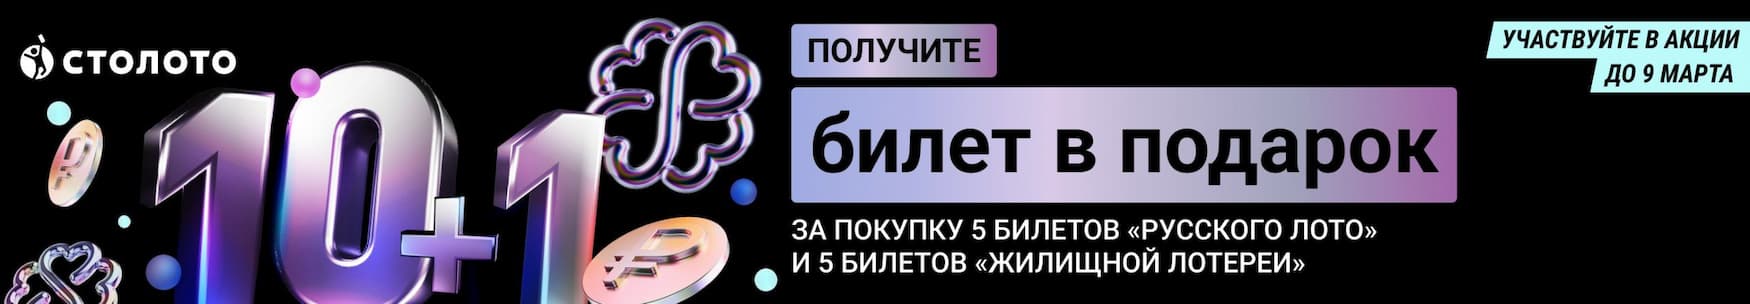 banner_aktsiya_10+1_8March